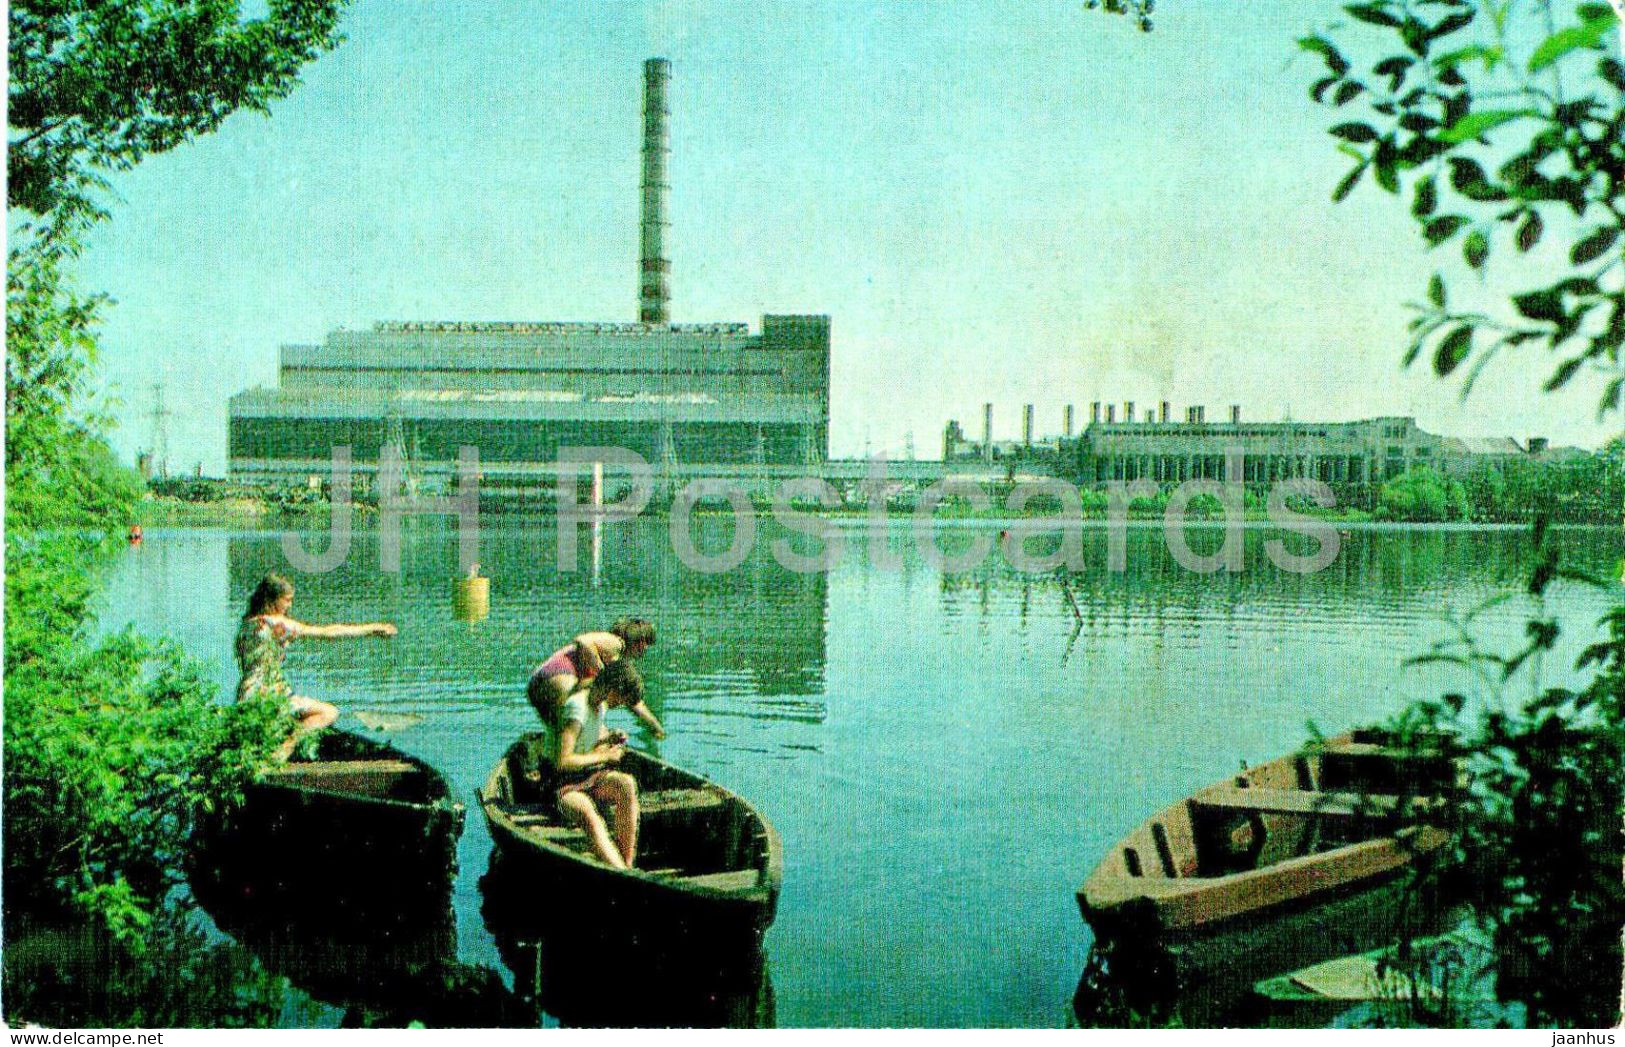 Shatura - Power Station On Peat - Boat - Turist - 1975 - Russia USSR - Unused - Rusland